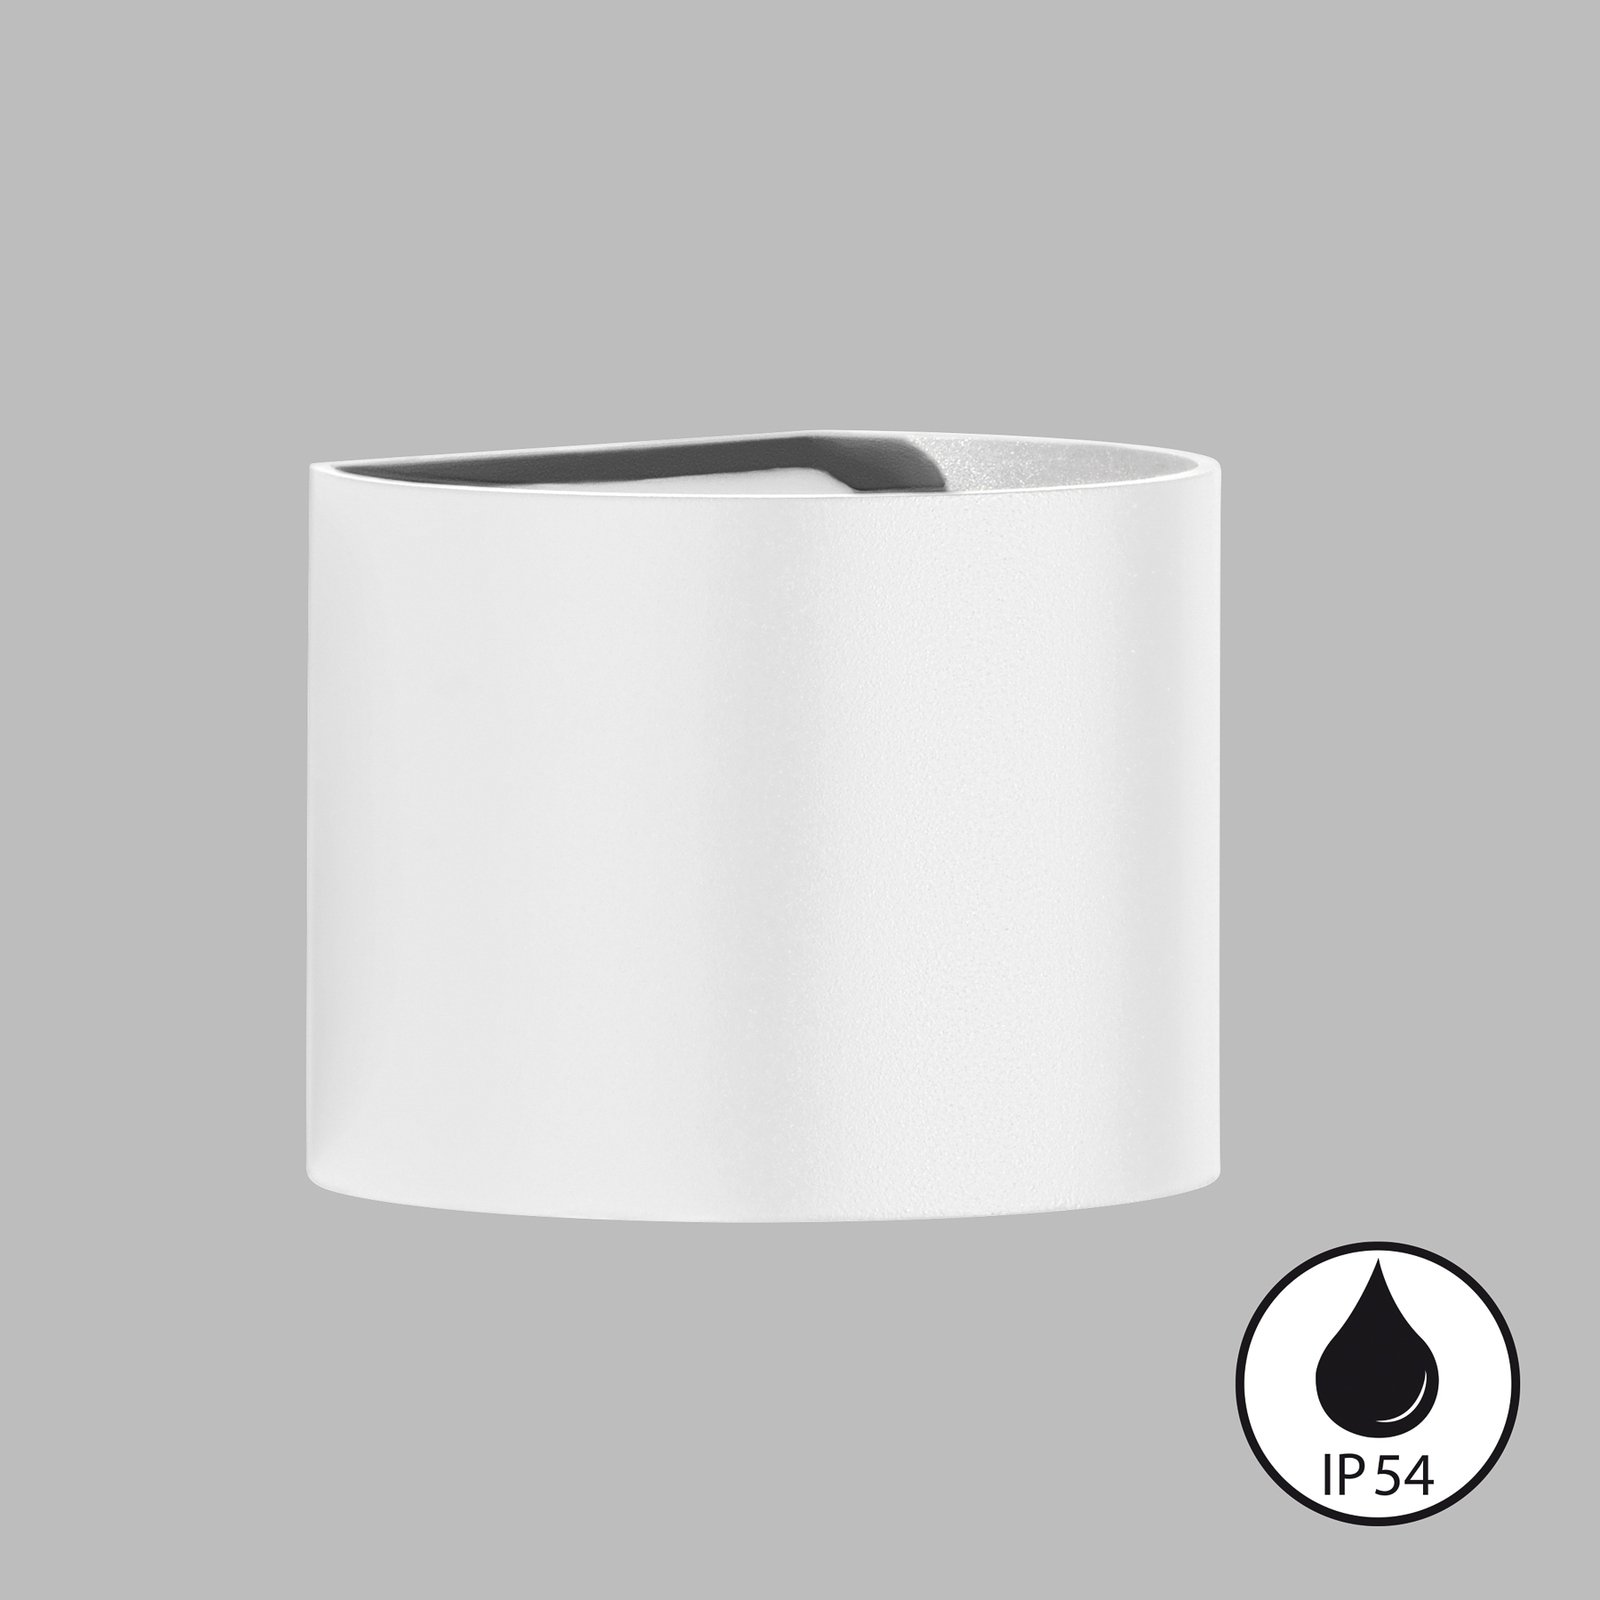 Venkovní nástěnné svítidlo LED Matteo, bílé, šířka 14 cm, 2 světla.